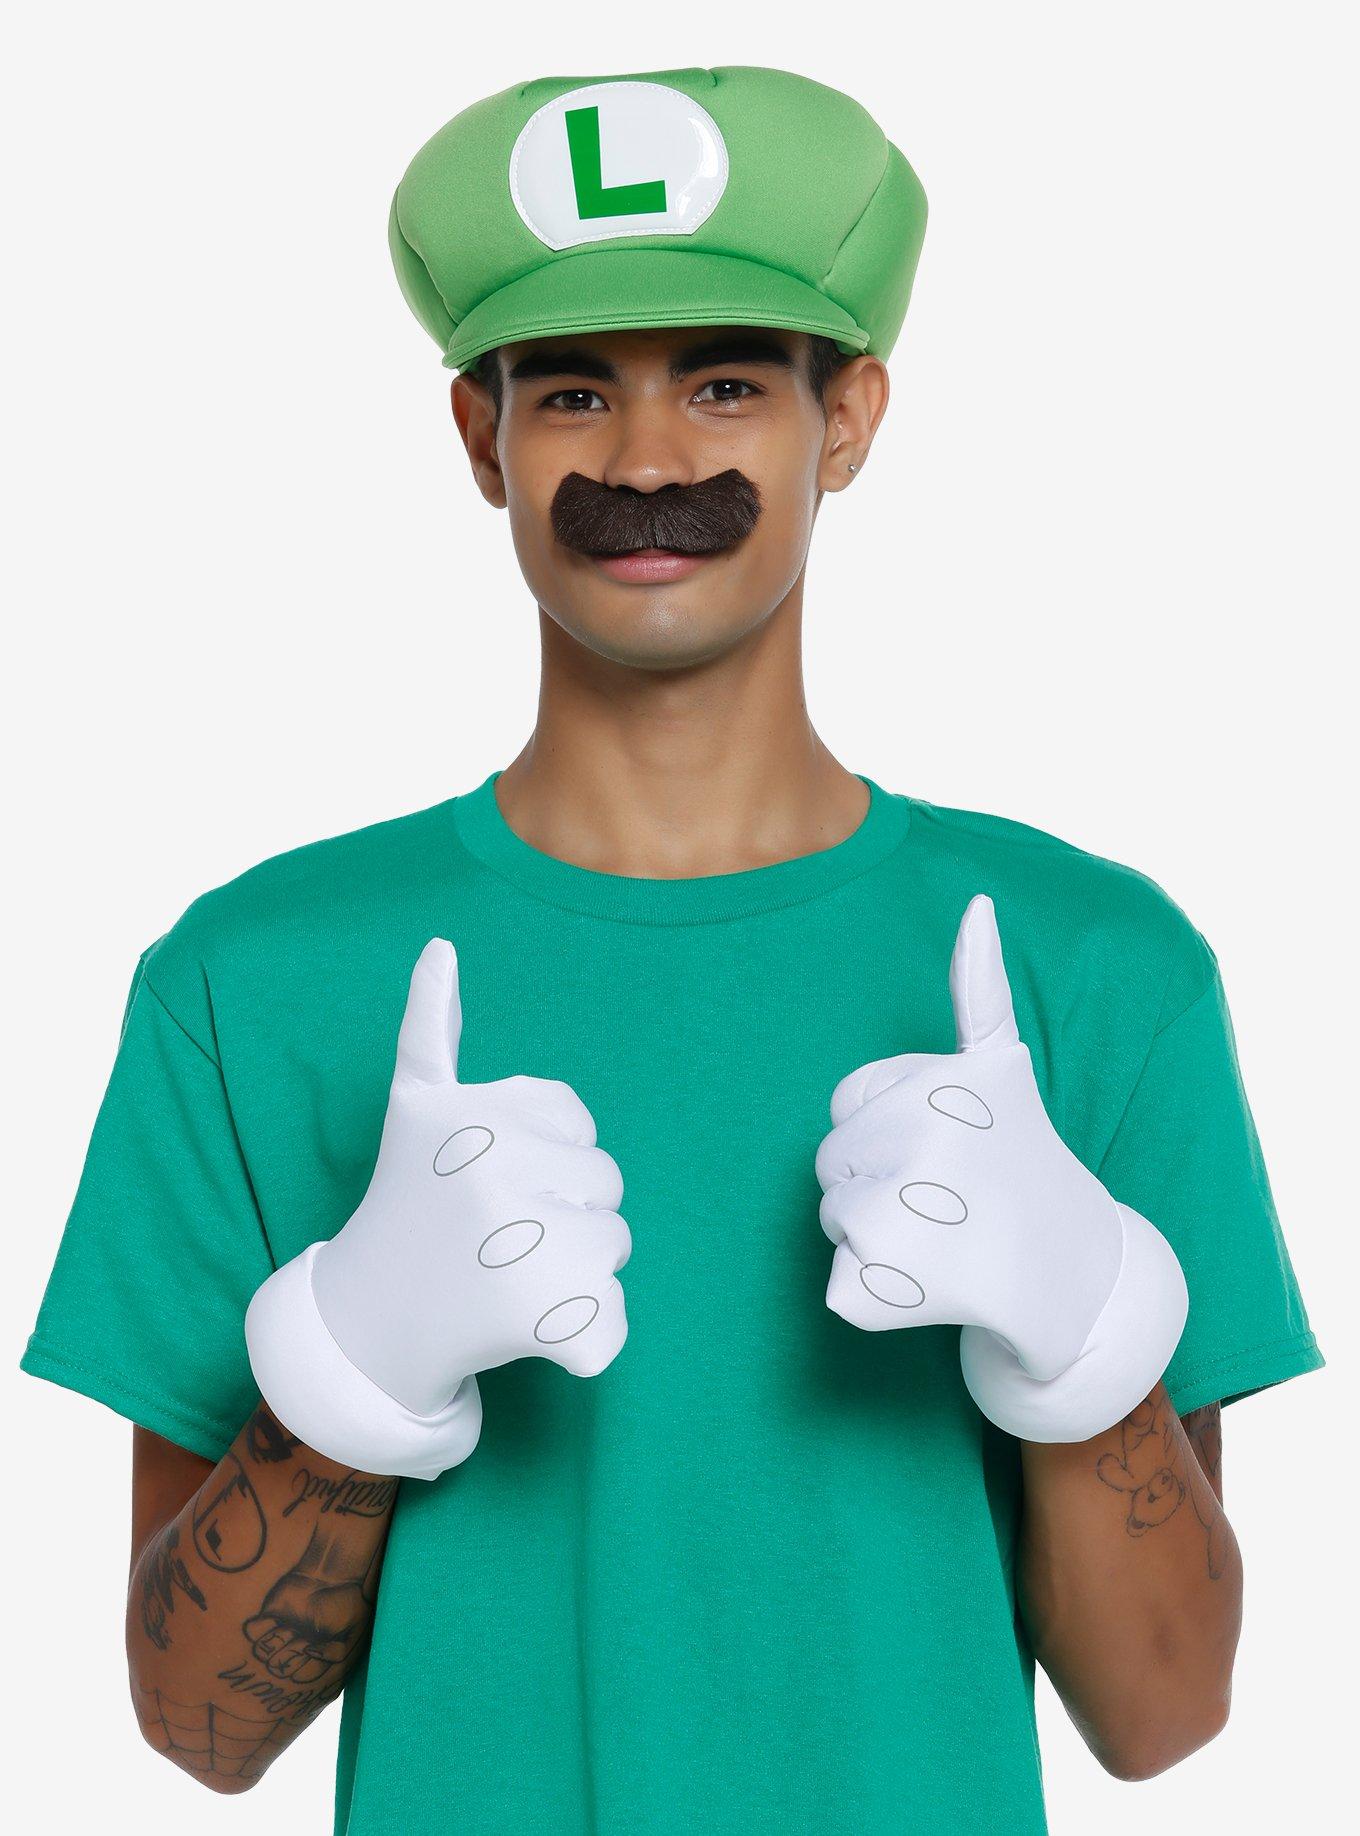 Super Mario Luigi Costume Kit